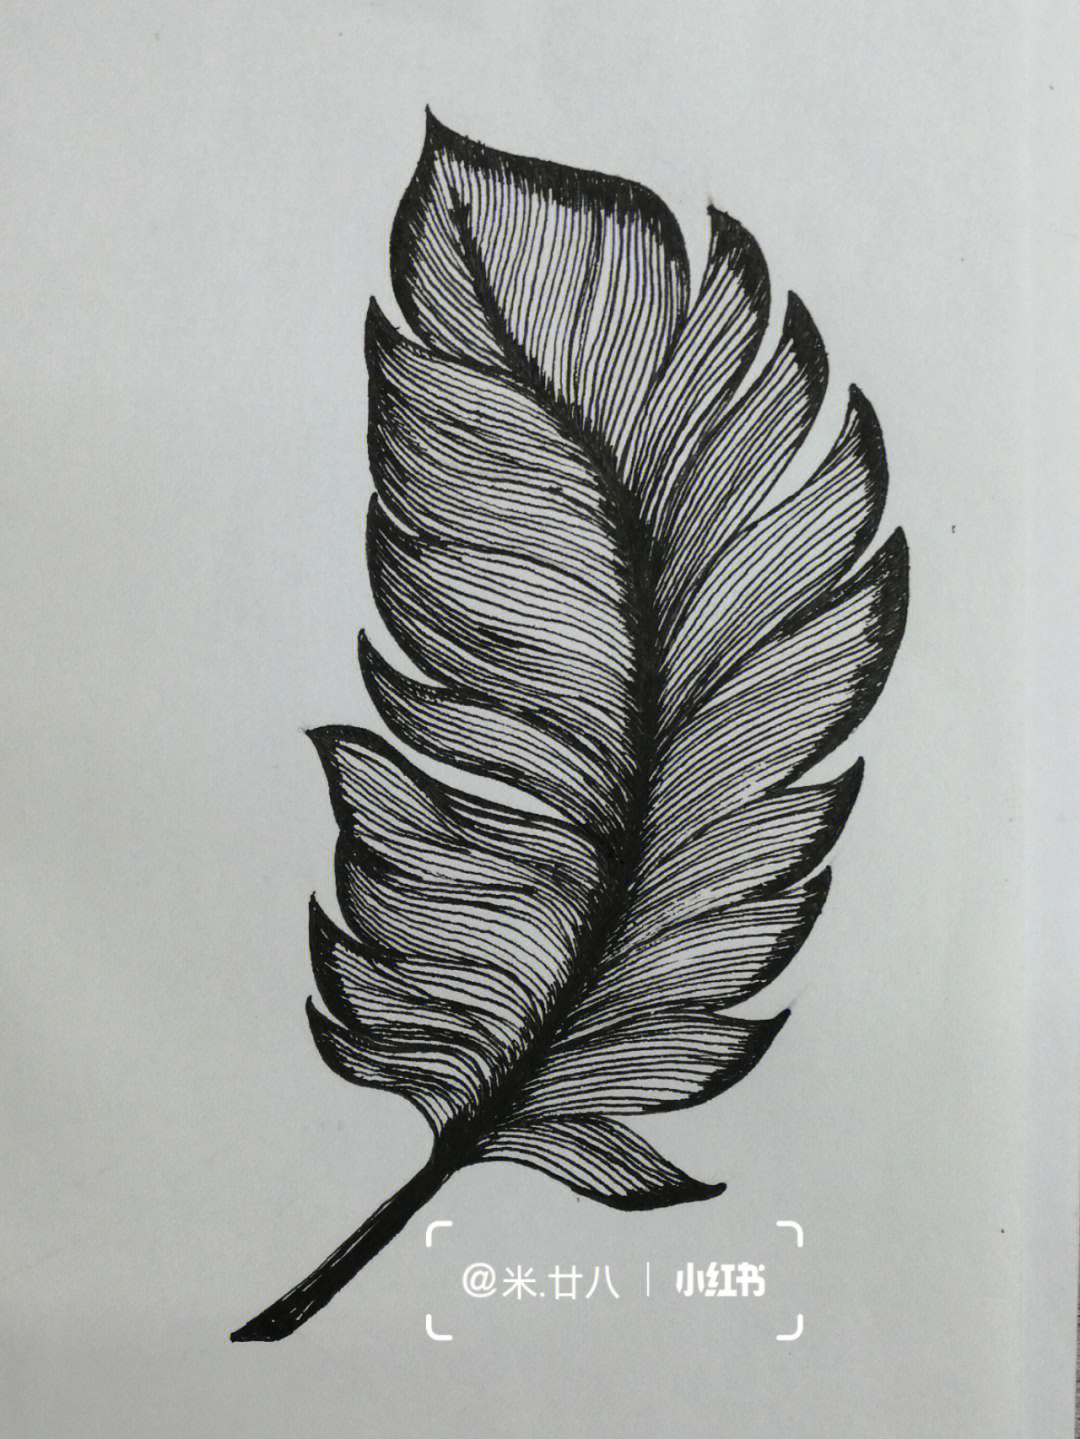 黑白线描练习临摹羽毛叶子 花朵控笔训练